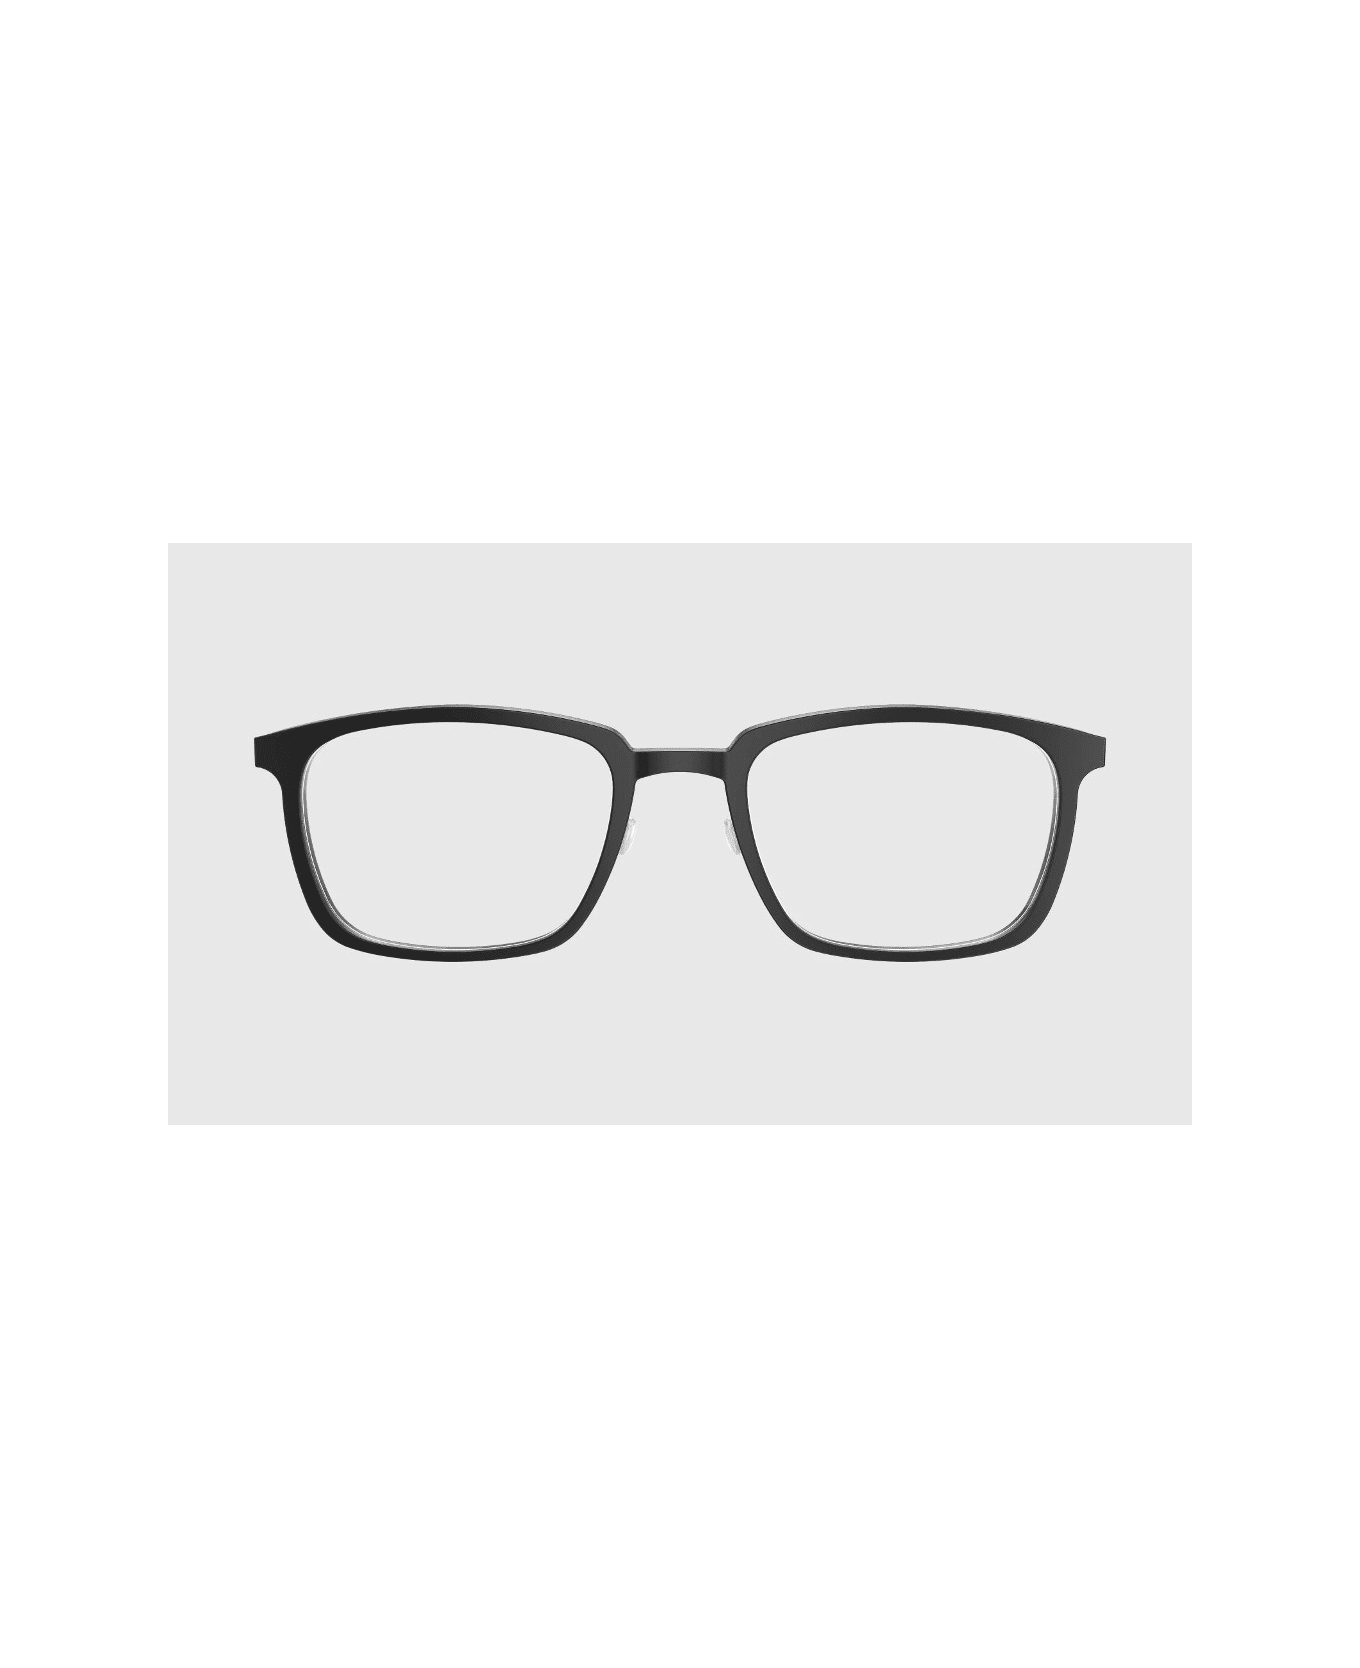 LINDBERG ACE 1231 Glasses